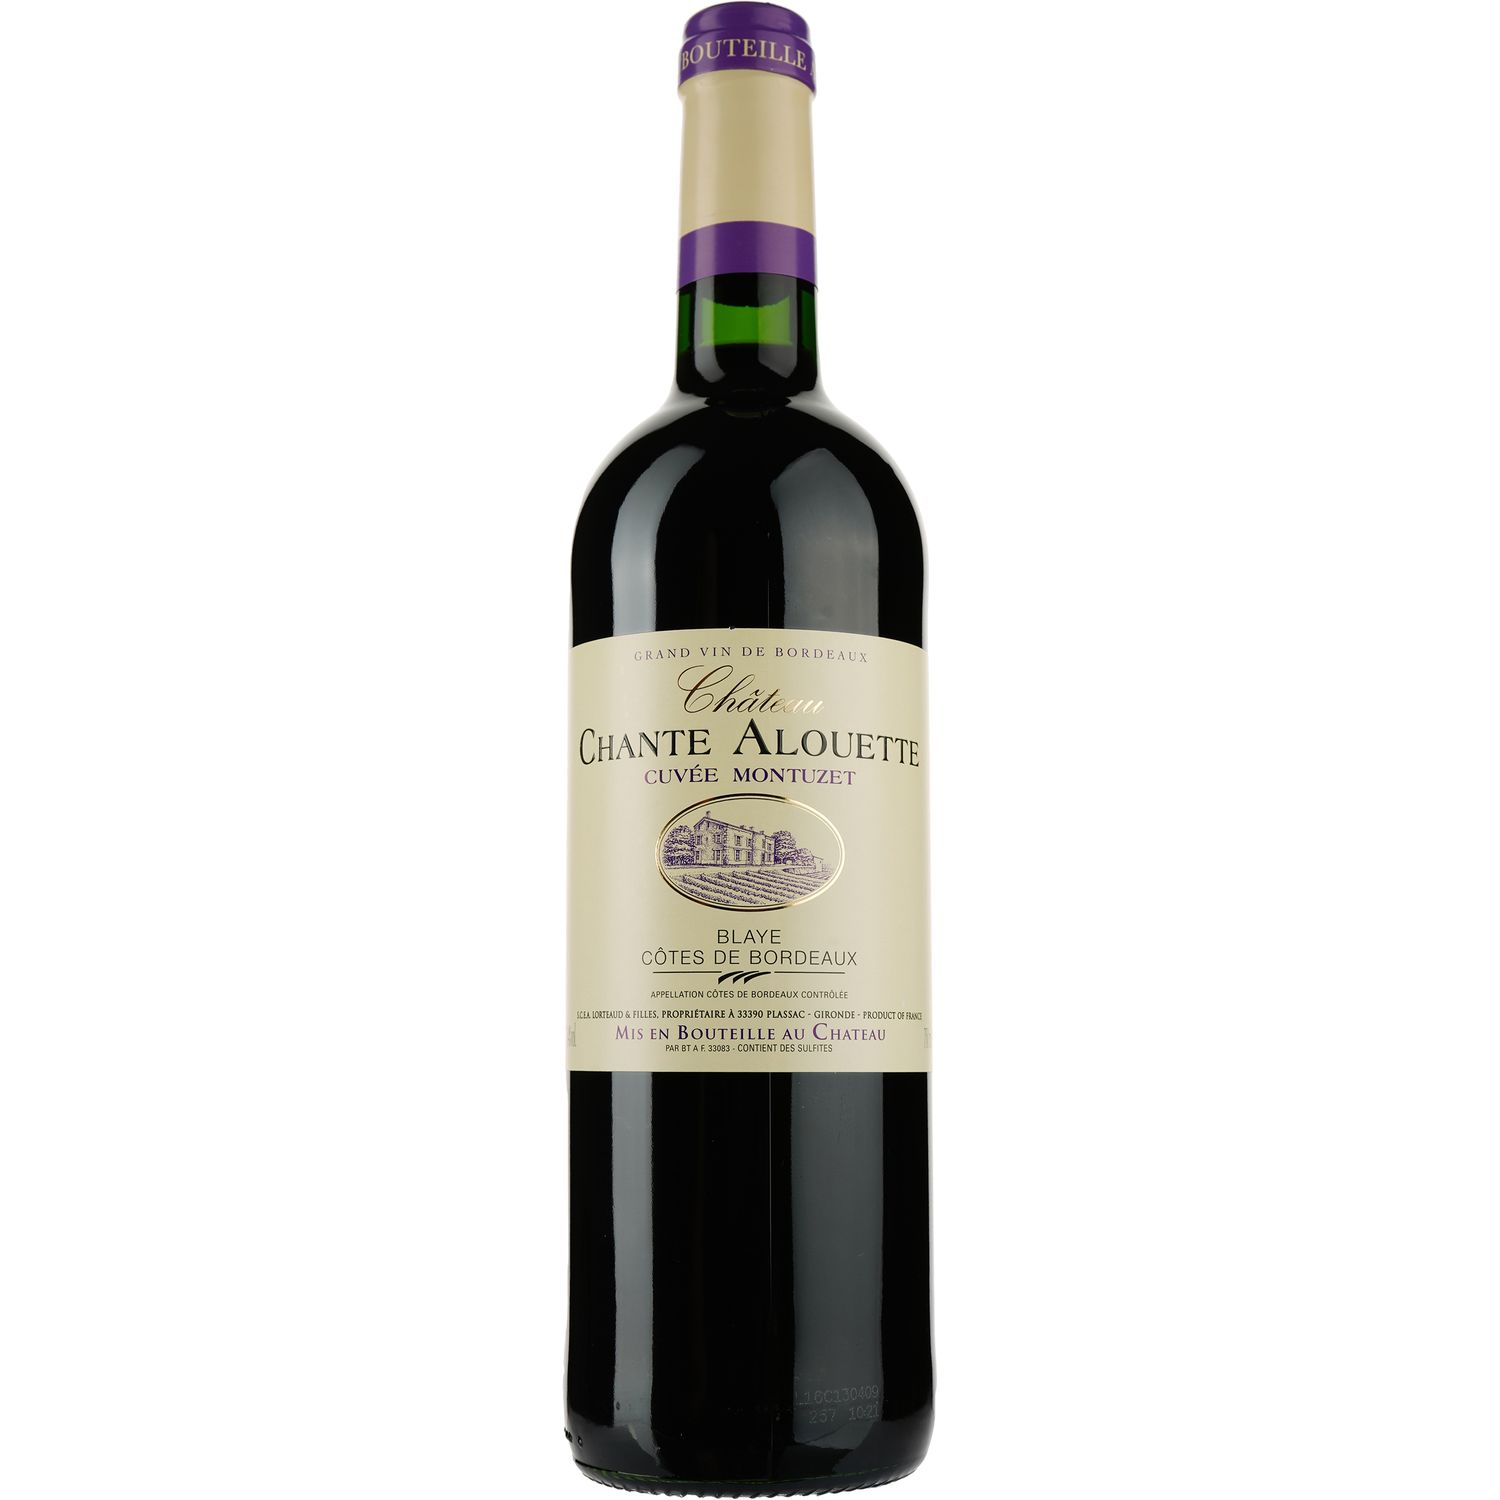 Вино Cuvee Montuzet Chateau Chante Alouette AOP Blaye Cotes de Bordeaux 2015, червоне, сухе, 0,75 л - фото 1